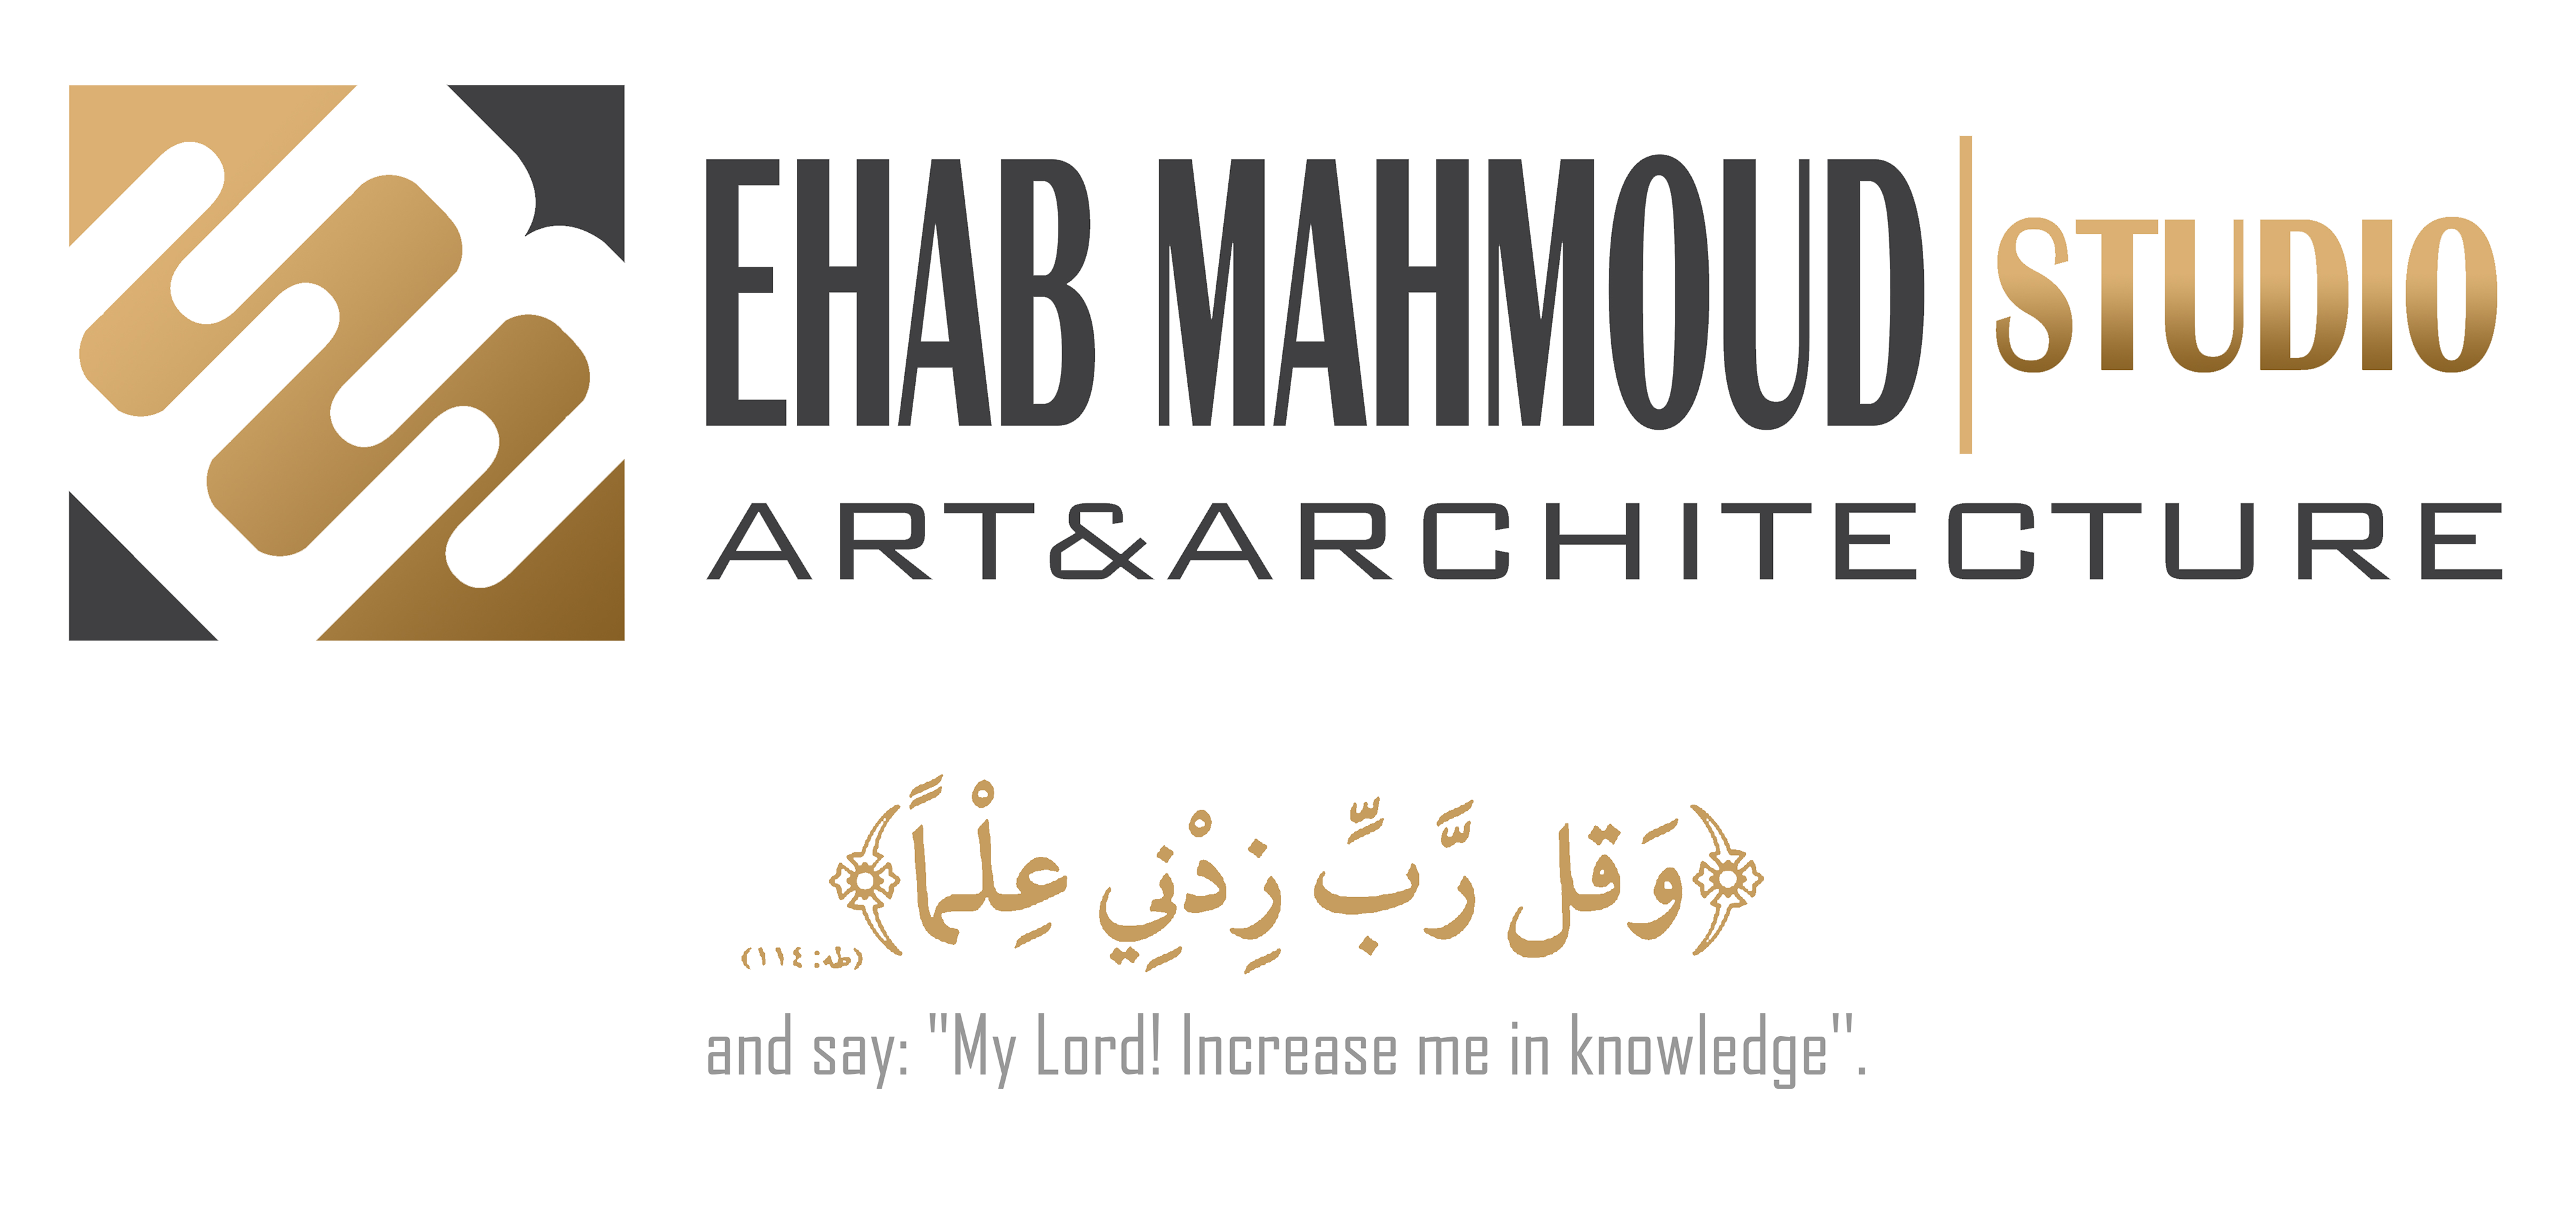 EHAB MAHMOUD